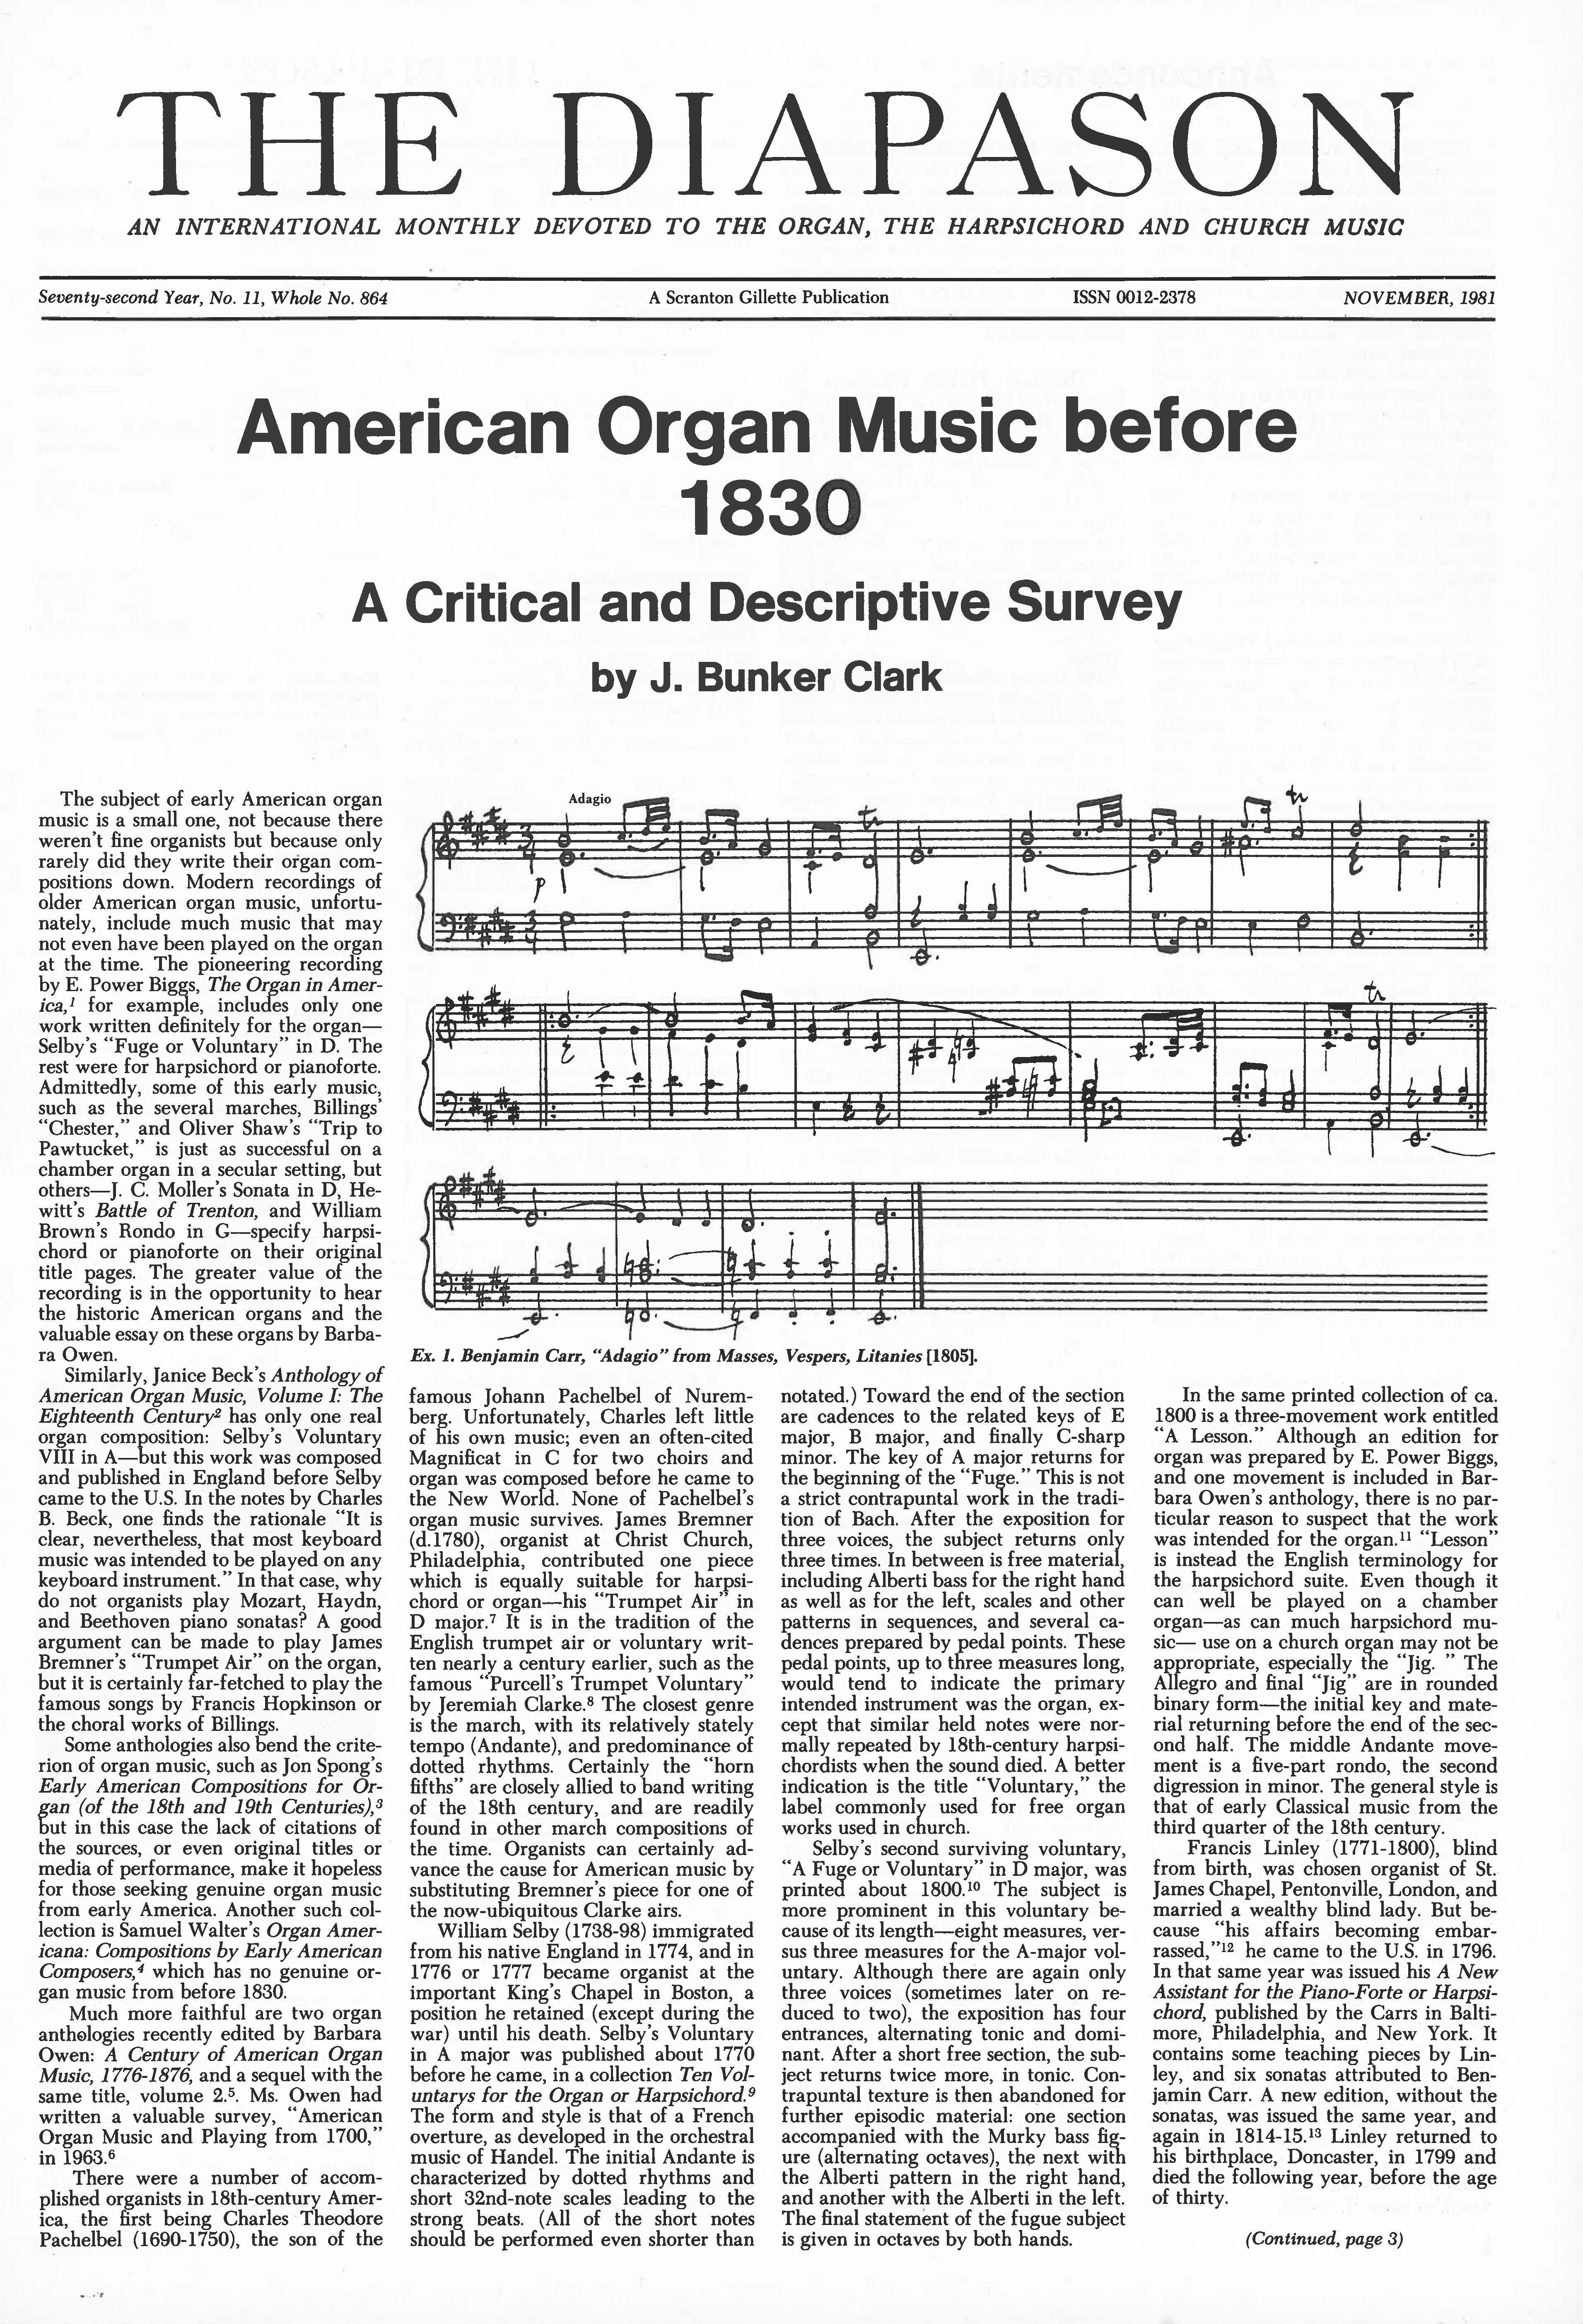 November 1981 Full Issue PDF